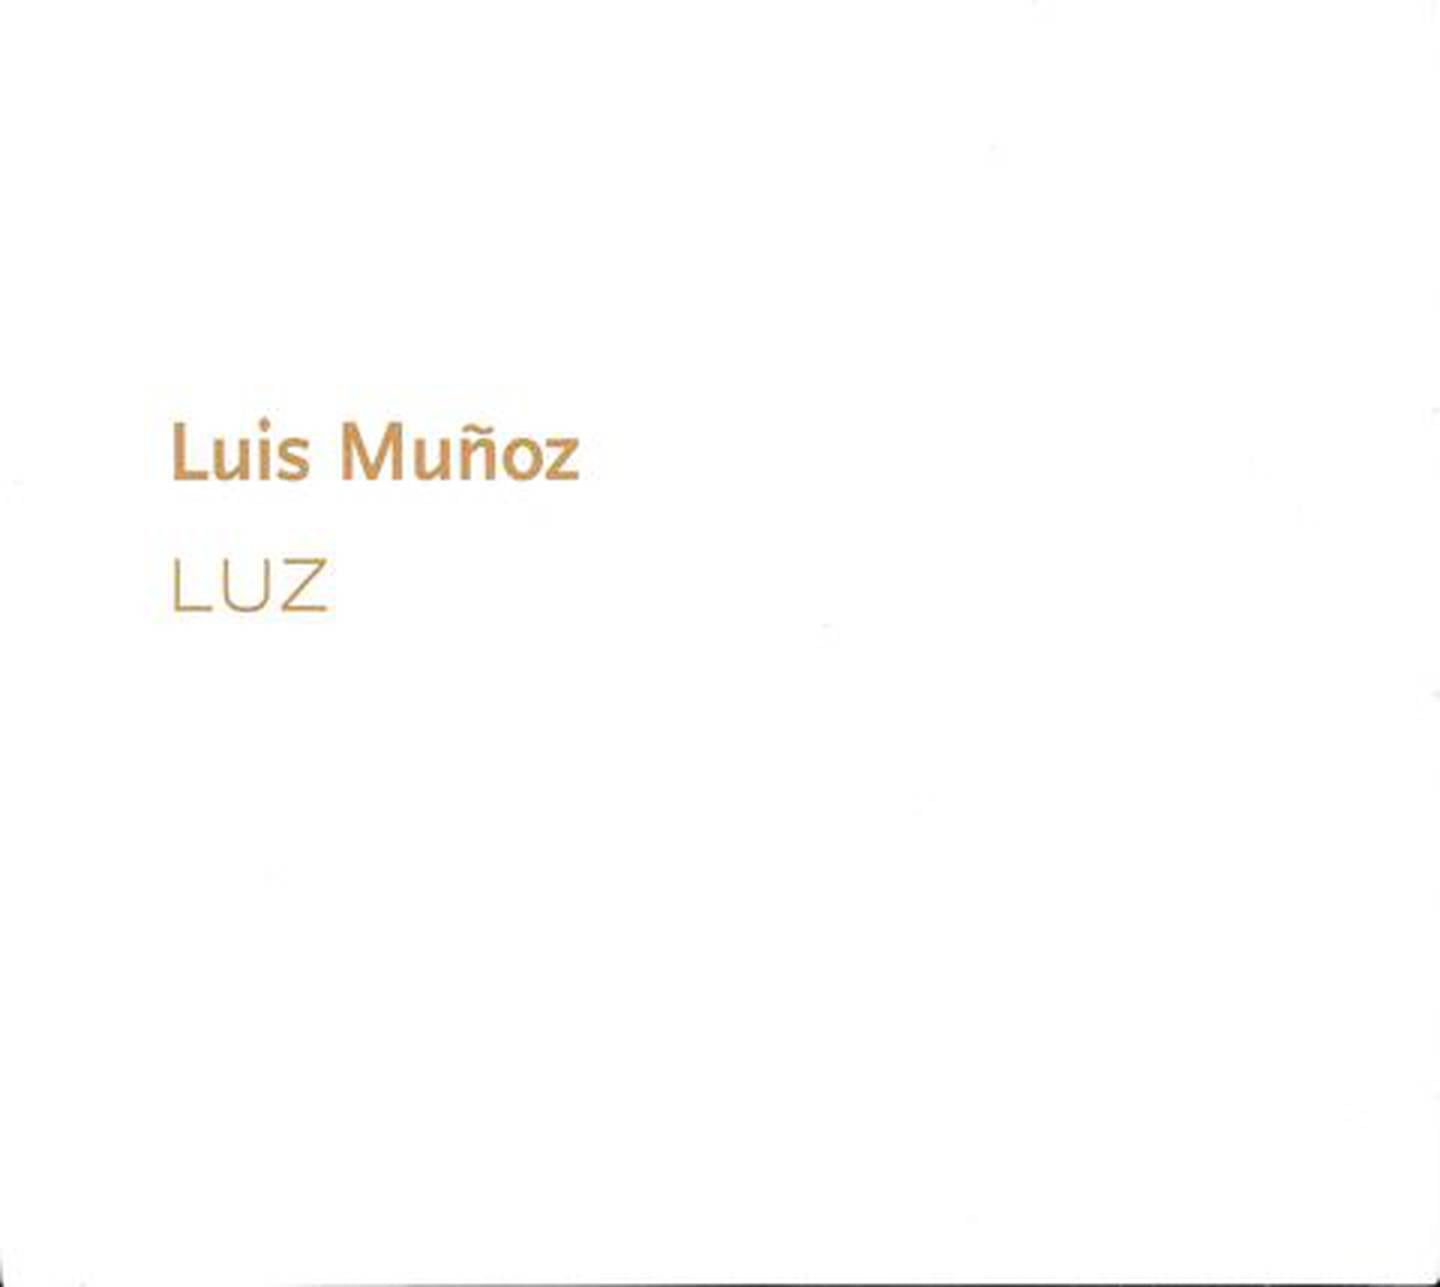 Fotografías del jazzista Luis Muñoz, Pelín.